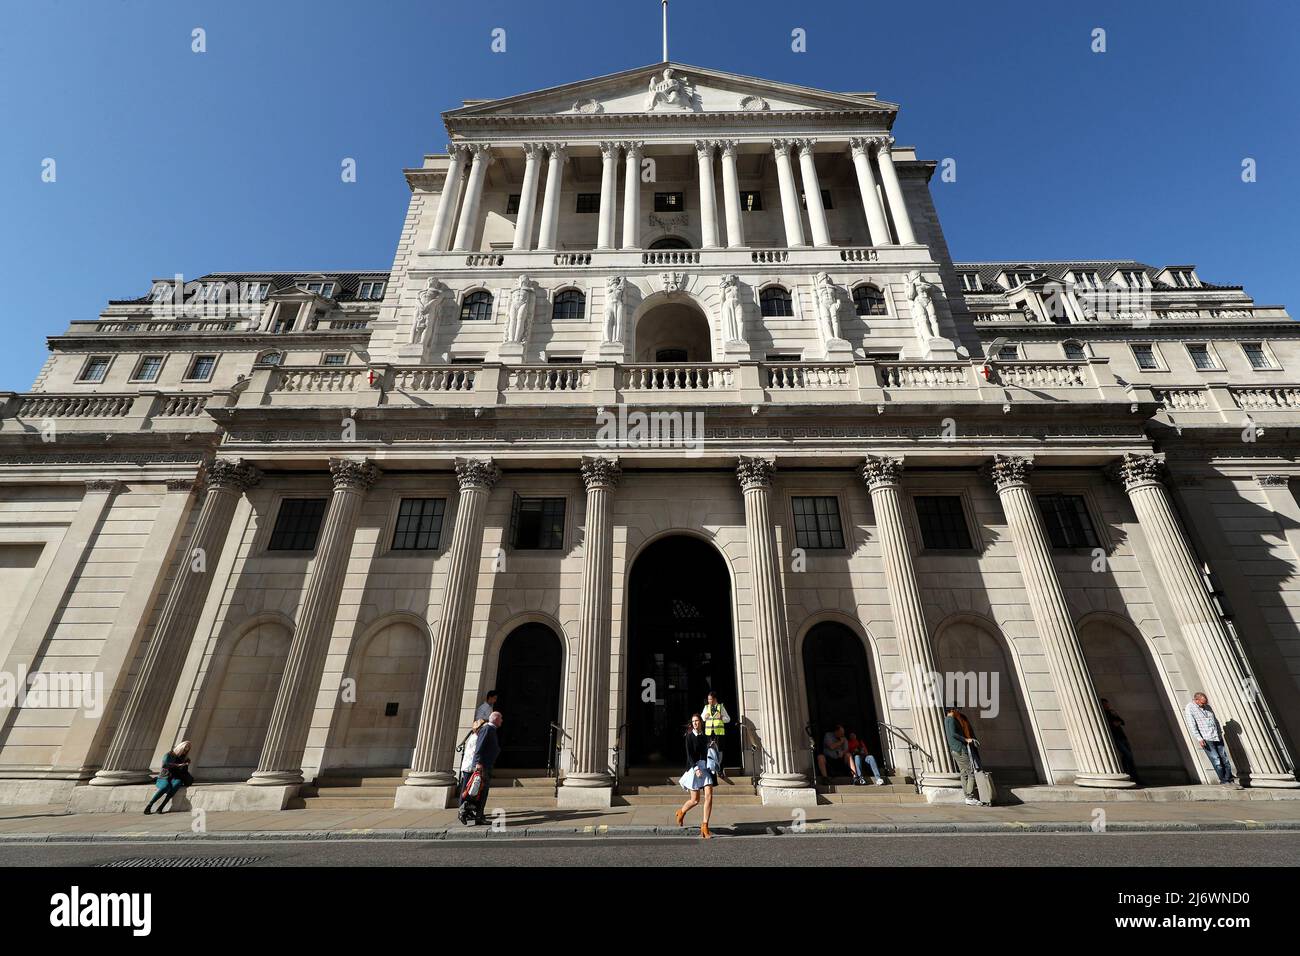 File photo dated 20/09/19 of the Bank of England, in the City of London, da die Zinssätze voraussichtlich am Donnerstag wieder auf ihren höchsten Stand seit 13 Jahren steigen werden, während die Bank of England kämpft, um die rasant anstürmende Inflation abzukühlen. Stockfoto